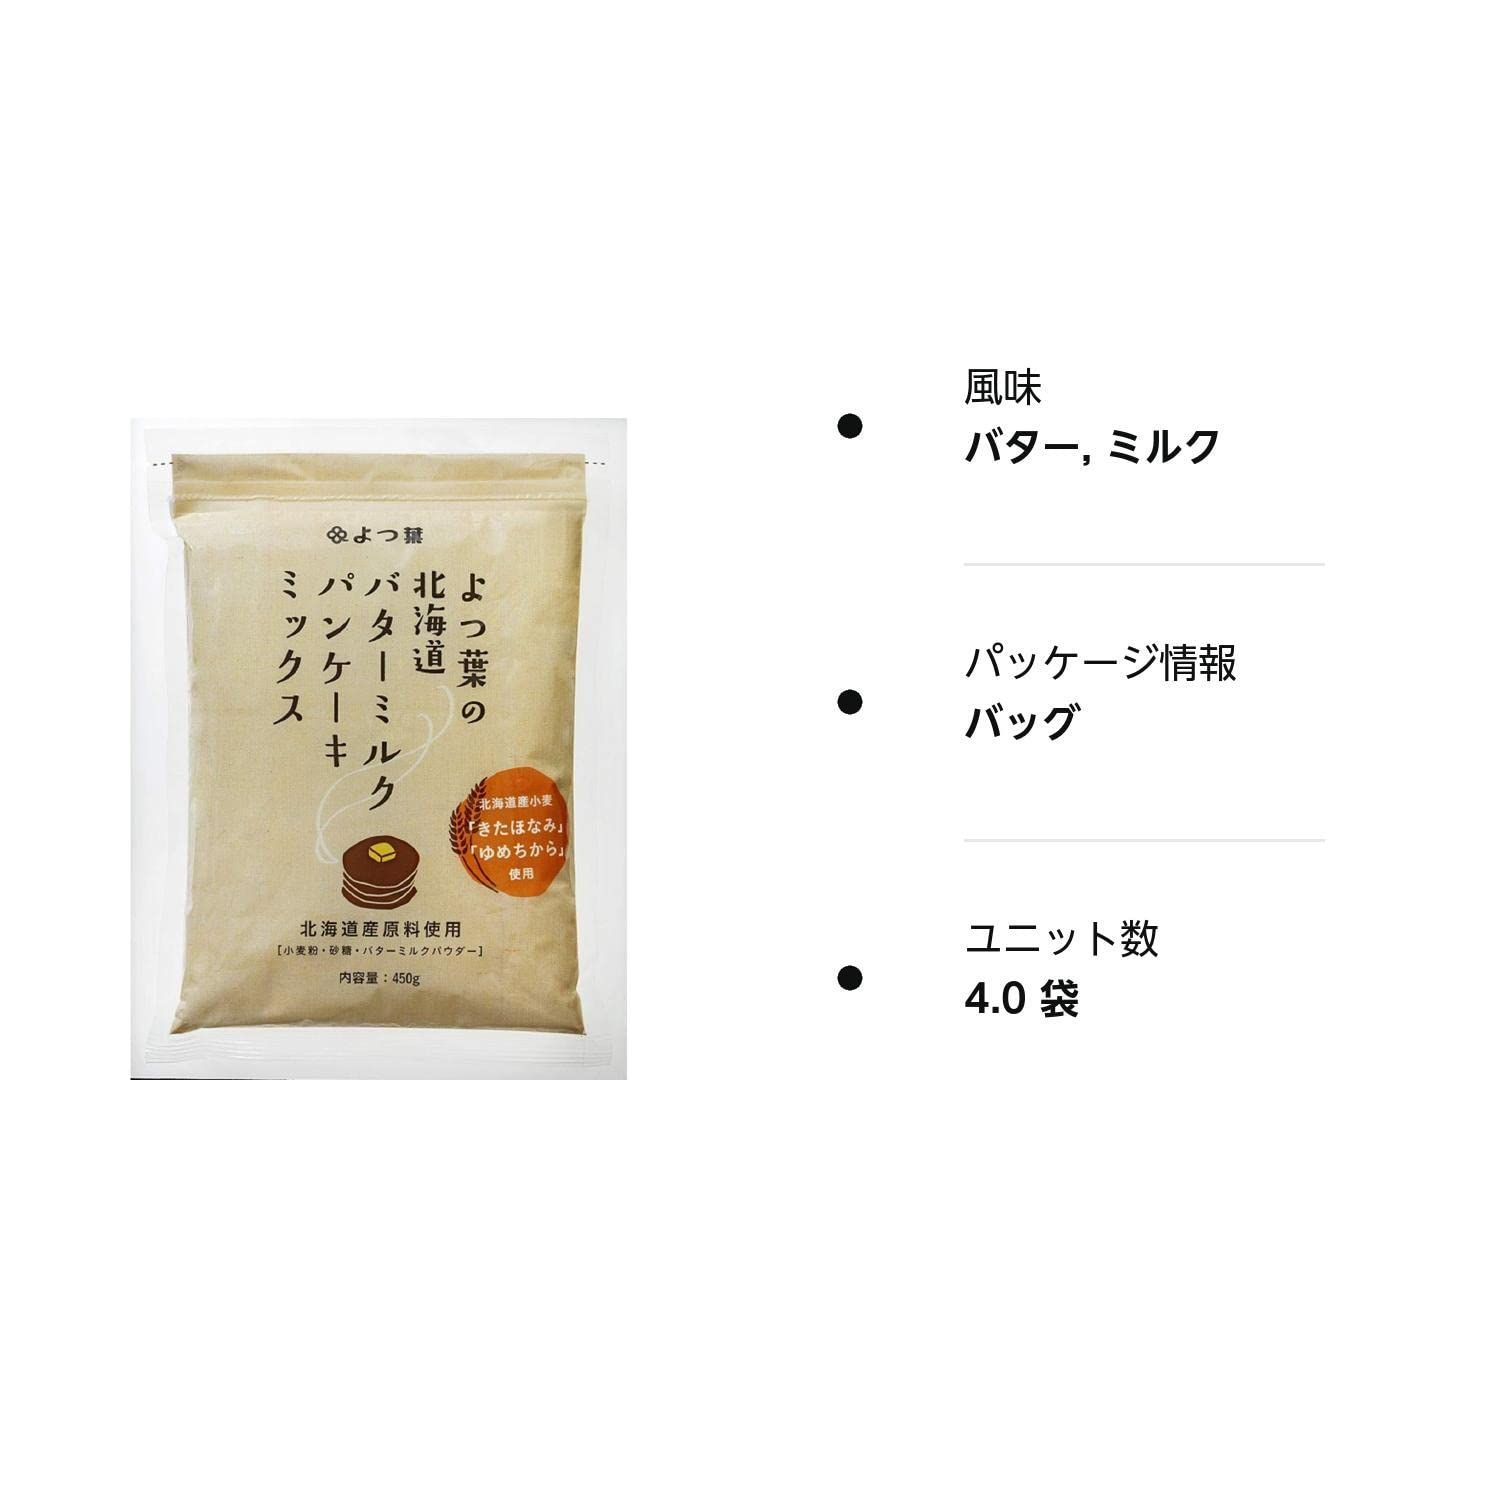 よつ葉乳業 よつ葉の北海道バターミルクパンケーキミックス 450g×4袋 - お菓子、ホットケーキミックス